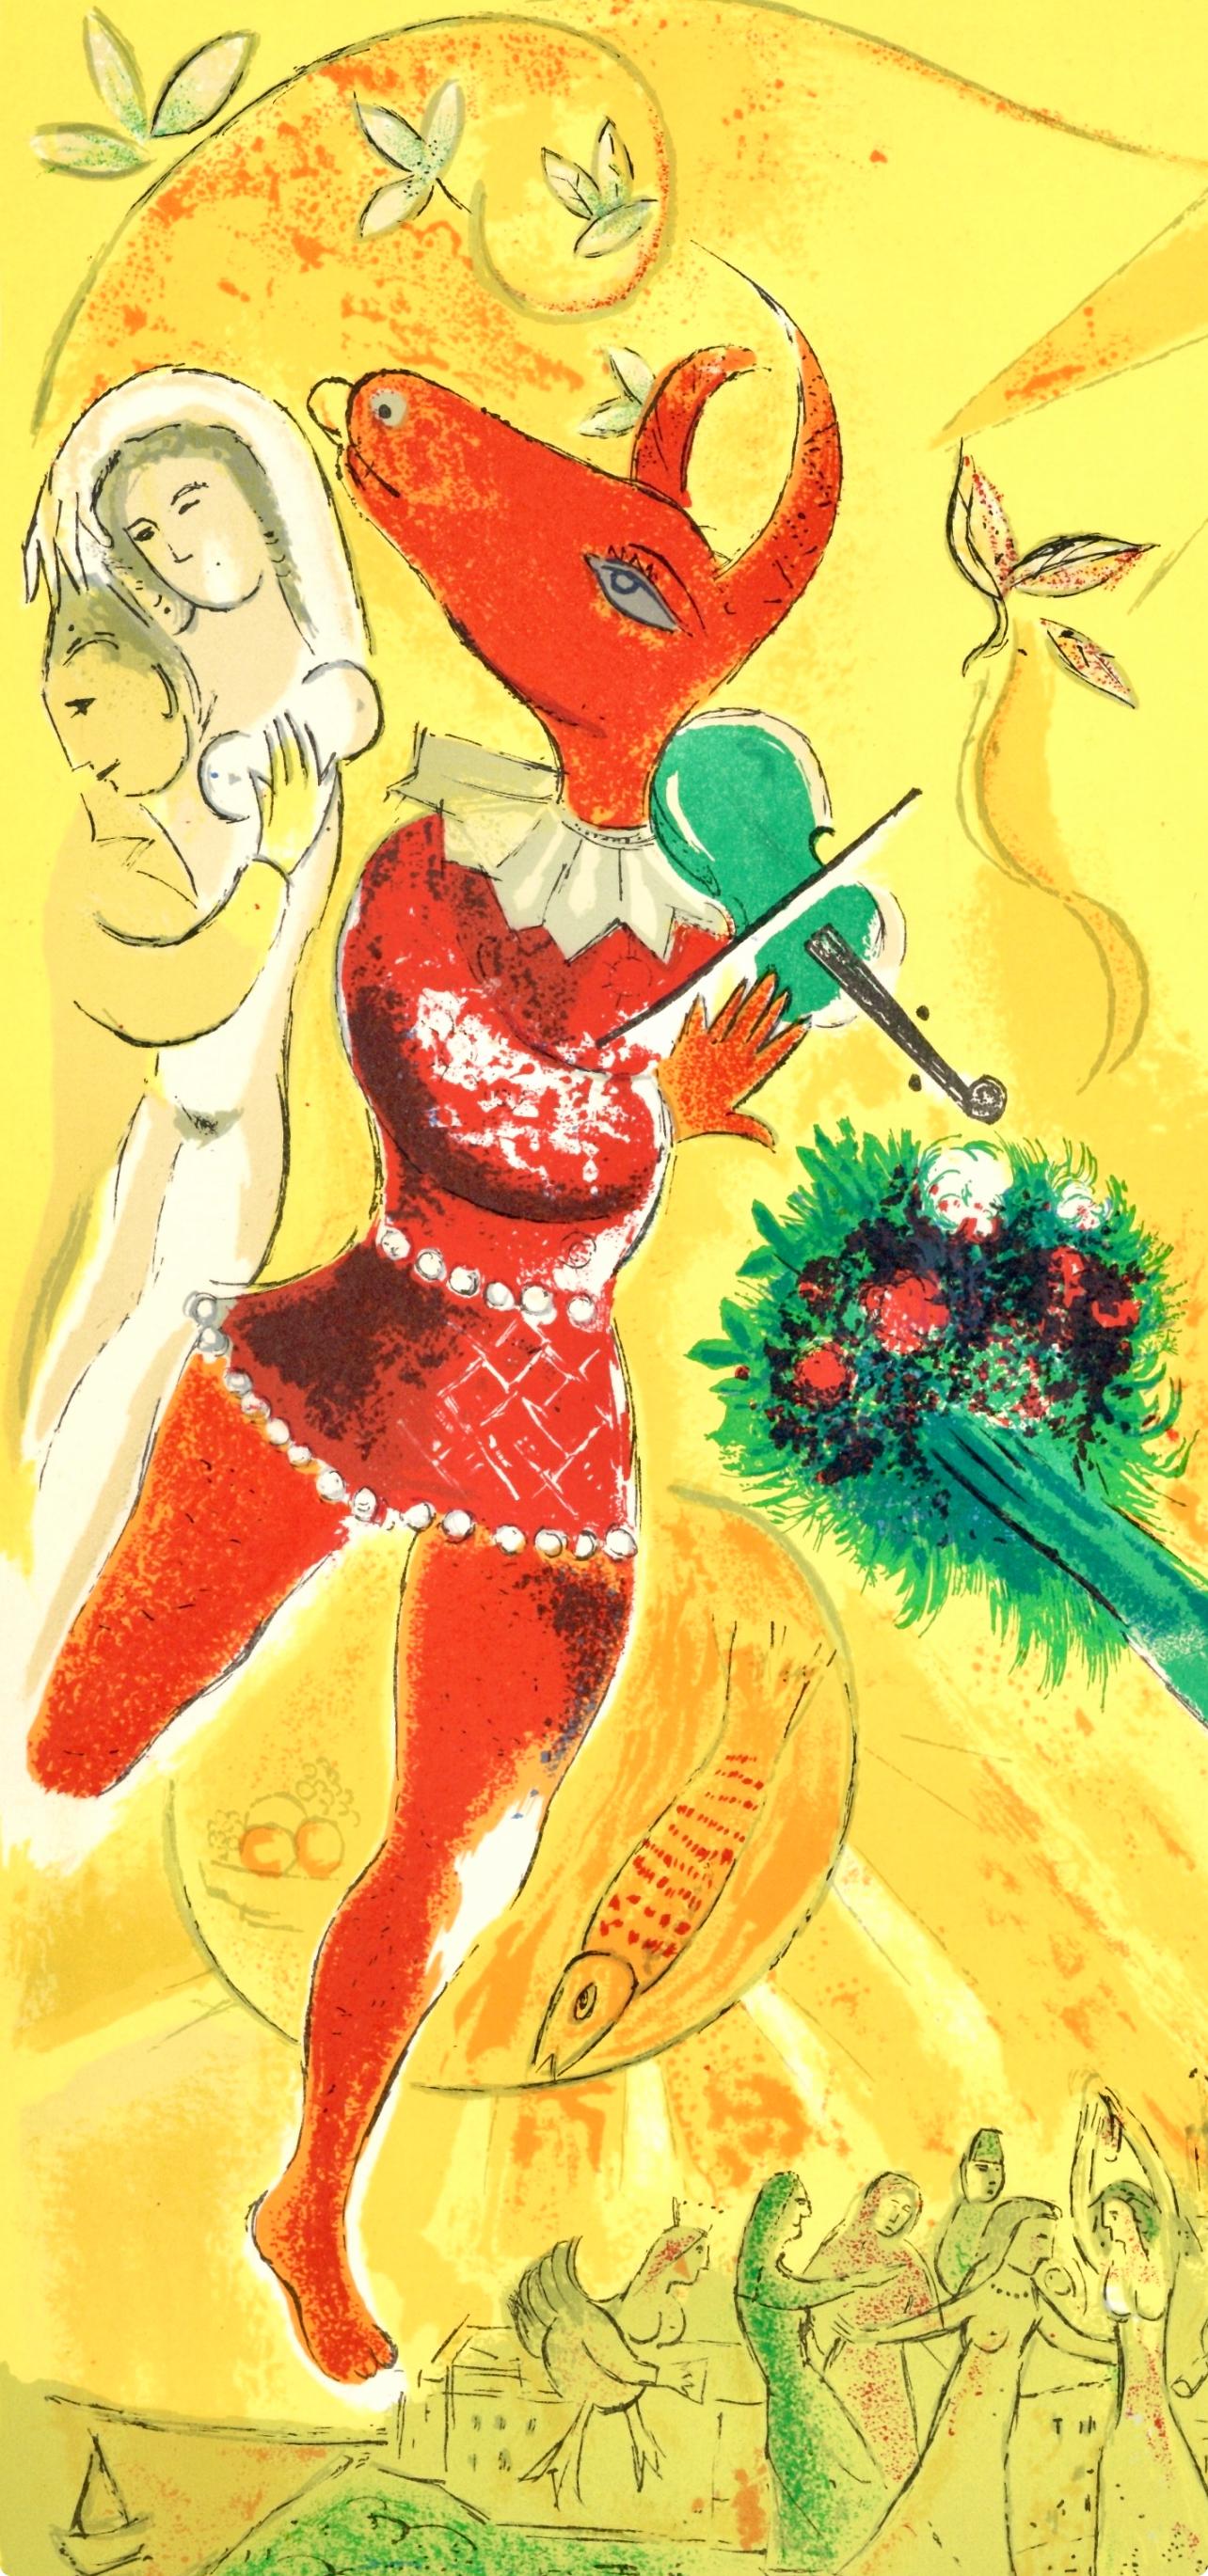 Chagall, La Danse, Derrière le Miroir (after) - Print by Marc Chagall